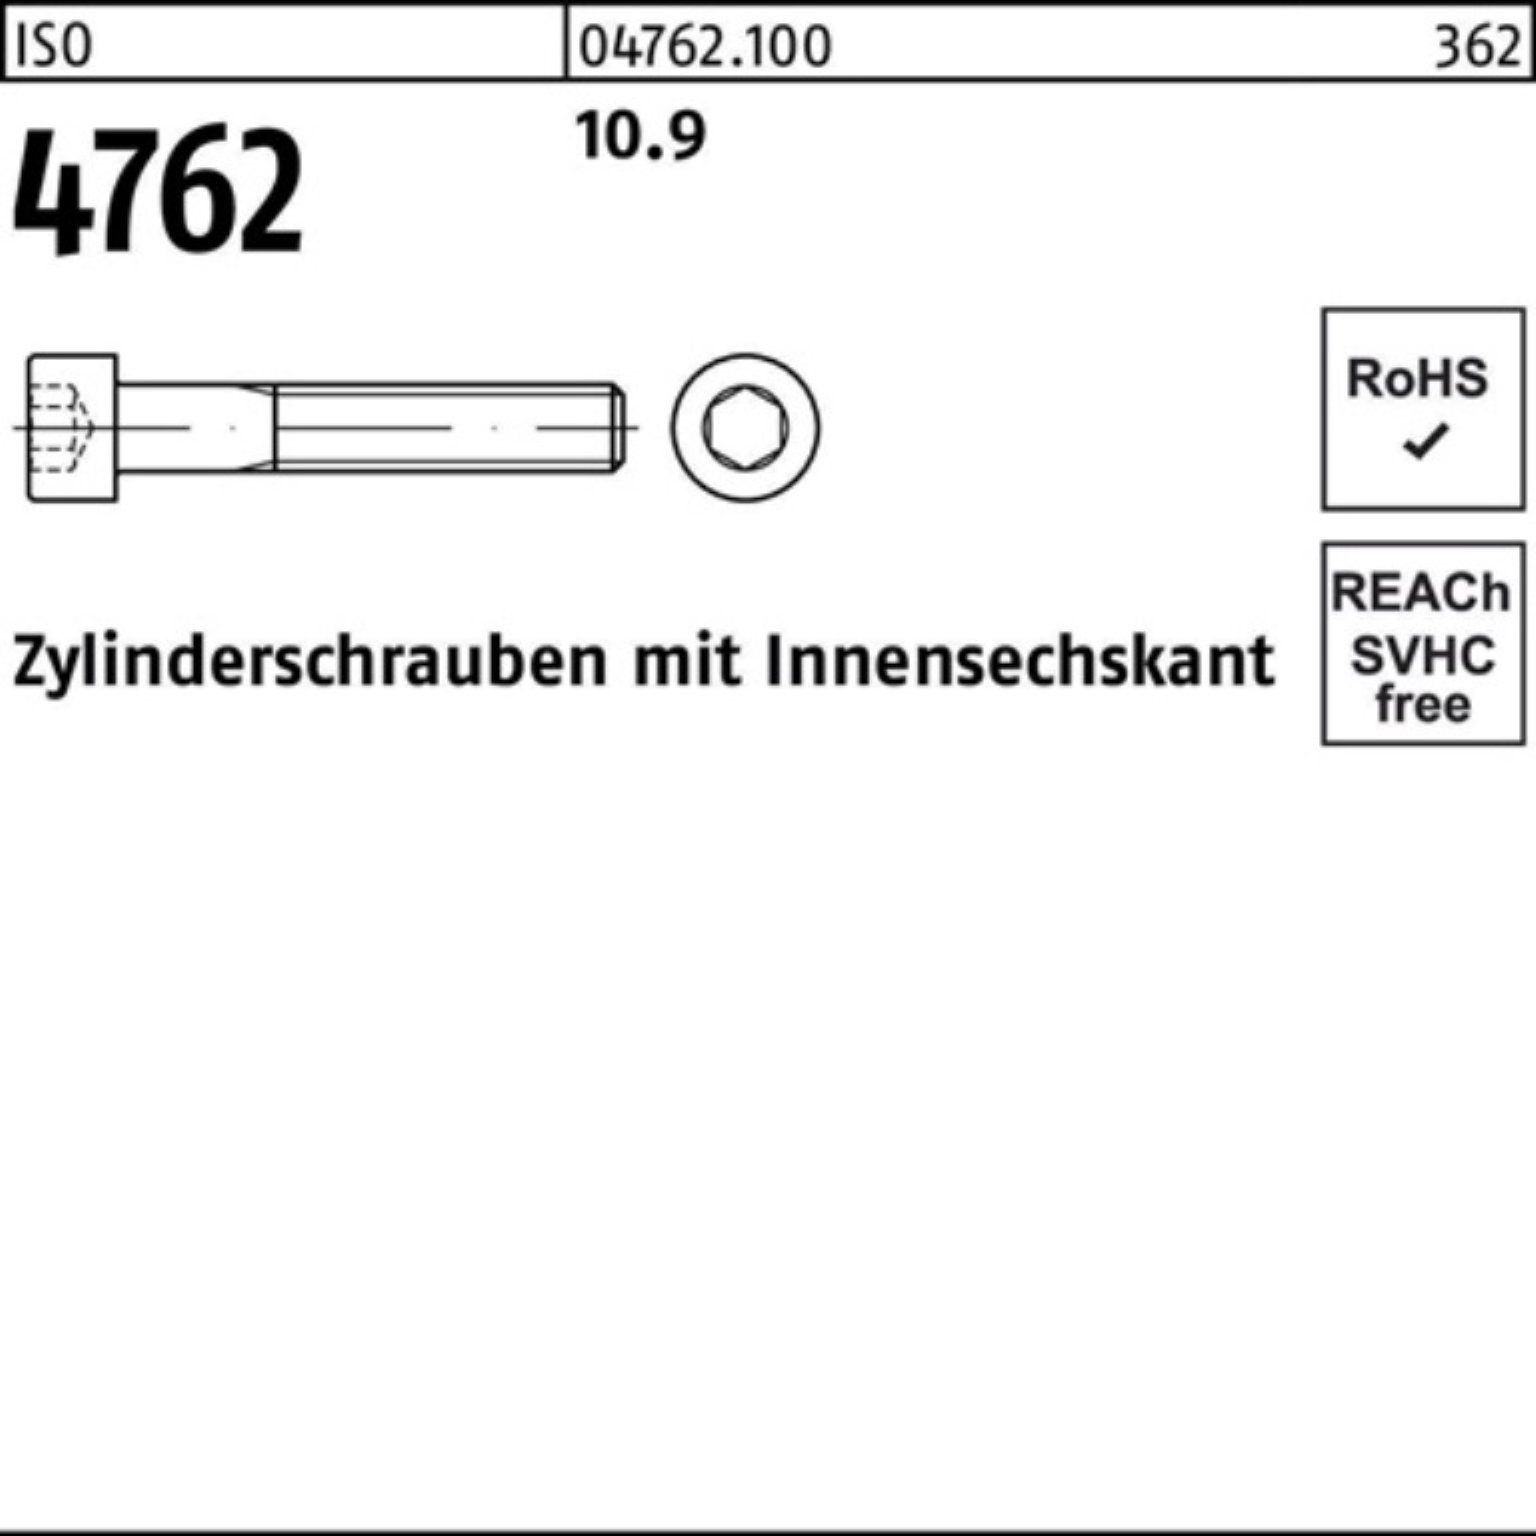 Reyher Zylinderschraube 1 10.9 Zylinderschraube ISO 180 100er Stück Pack M42x Innen-6kt 4762